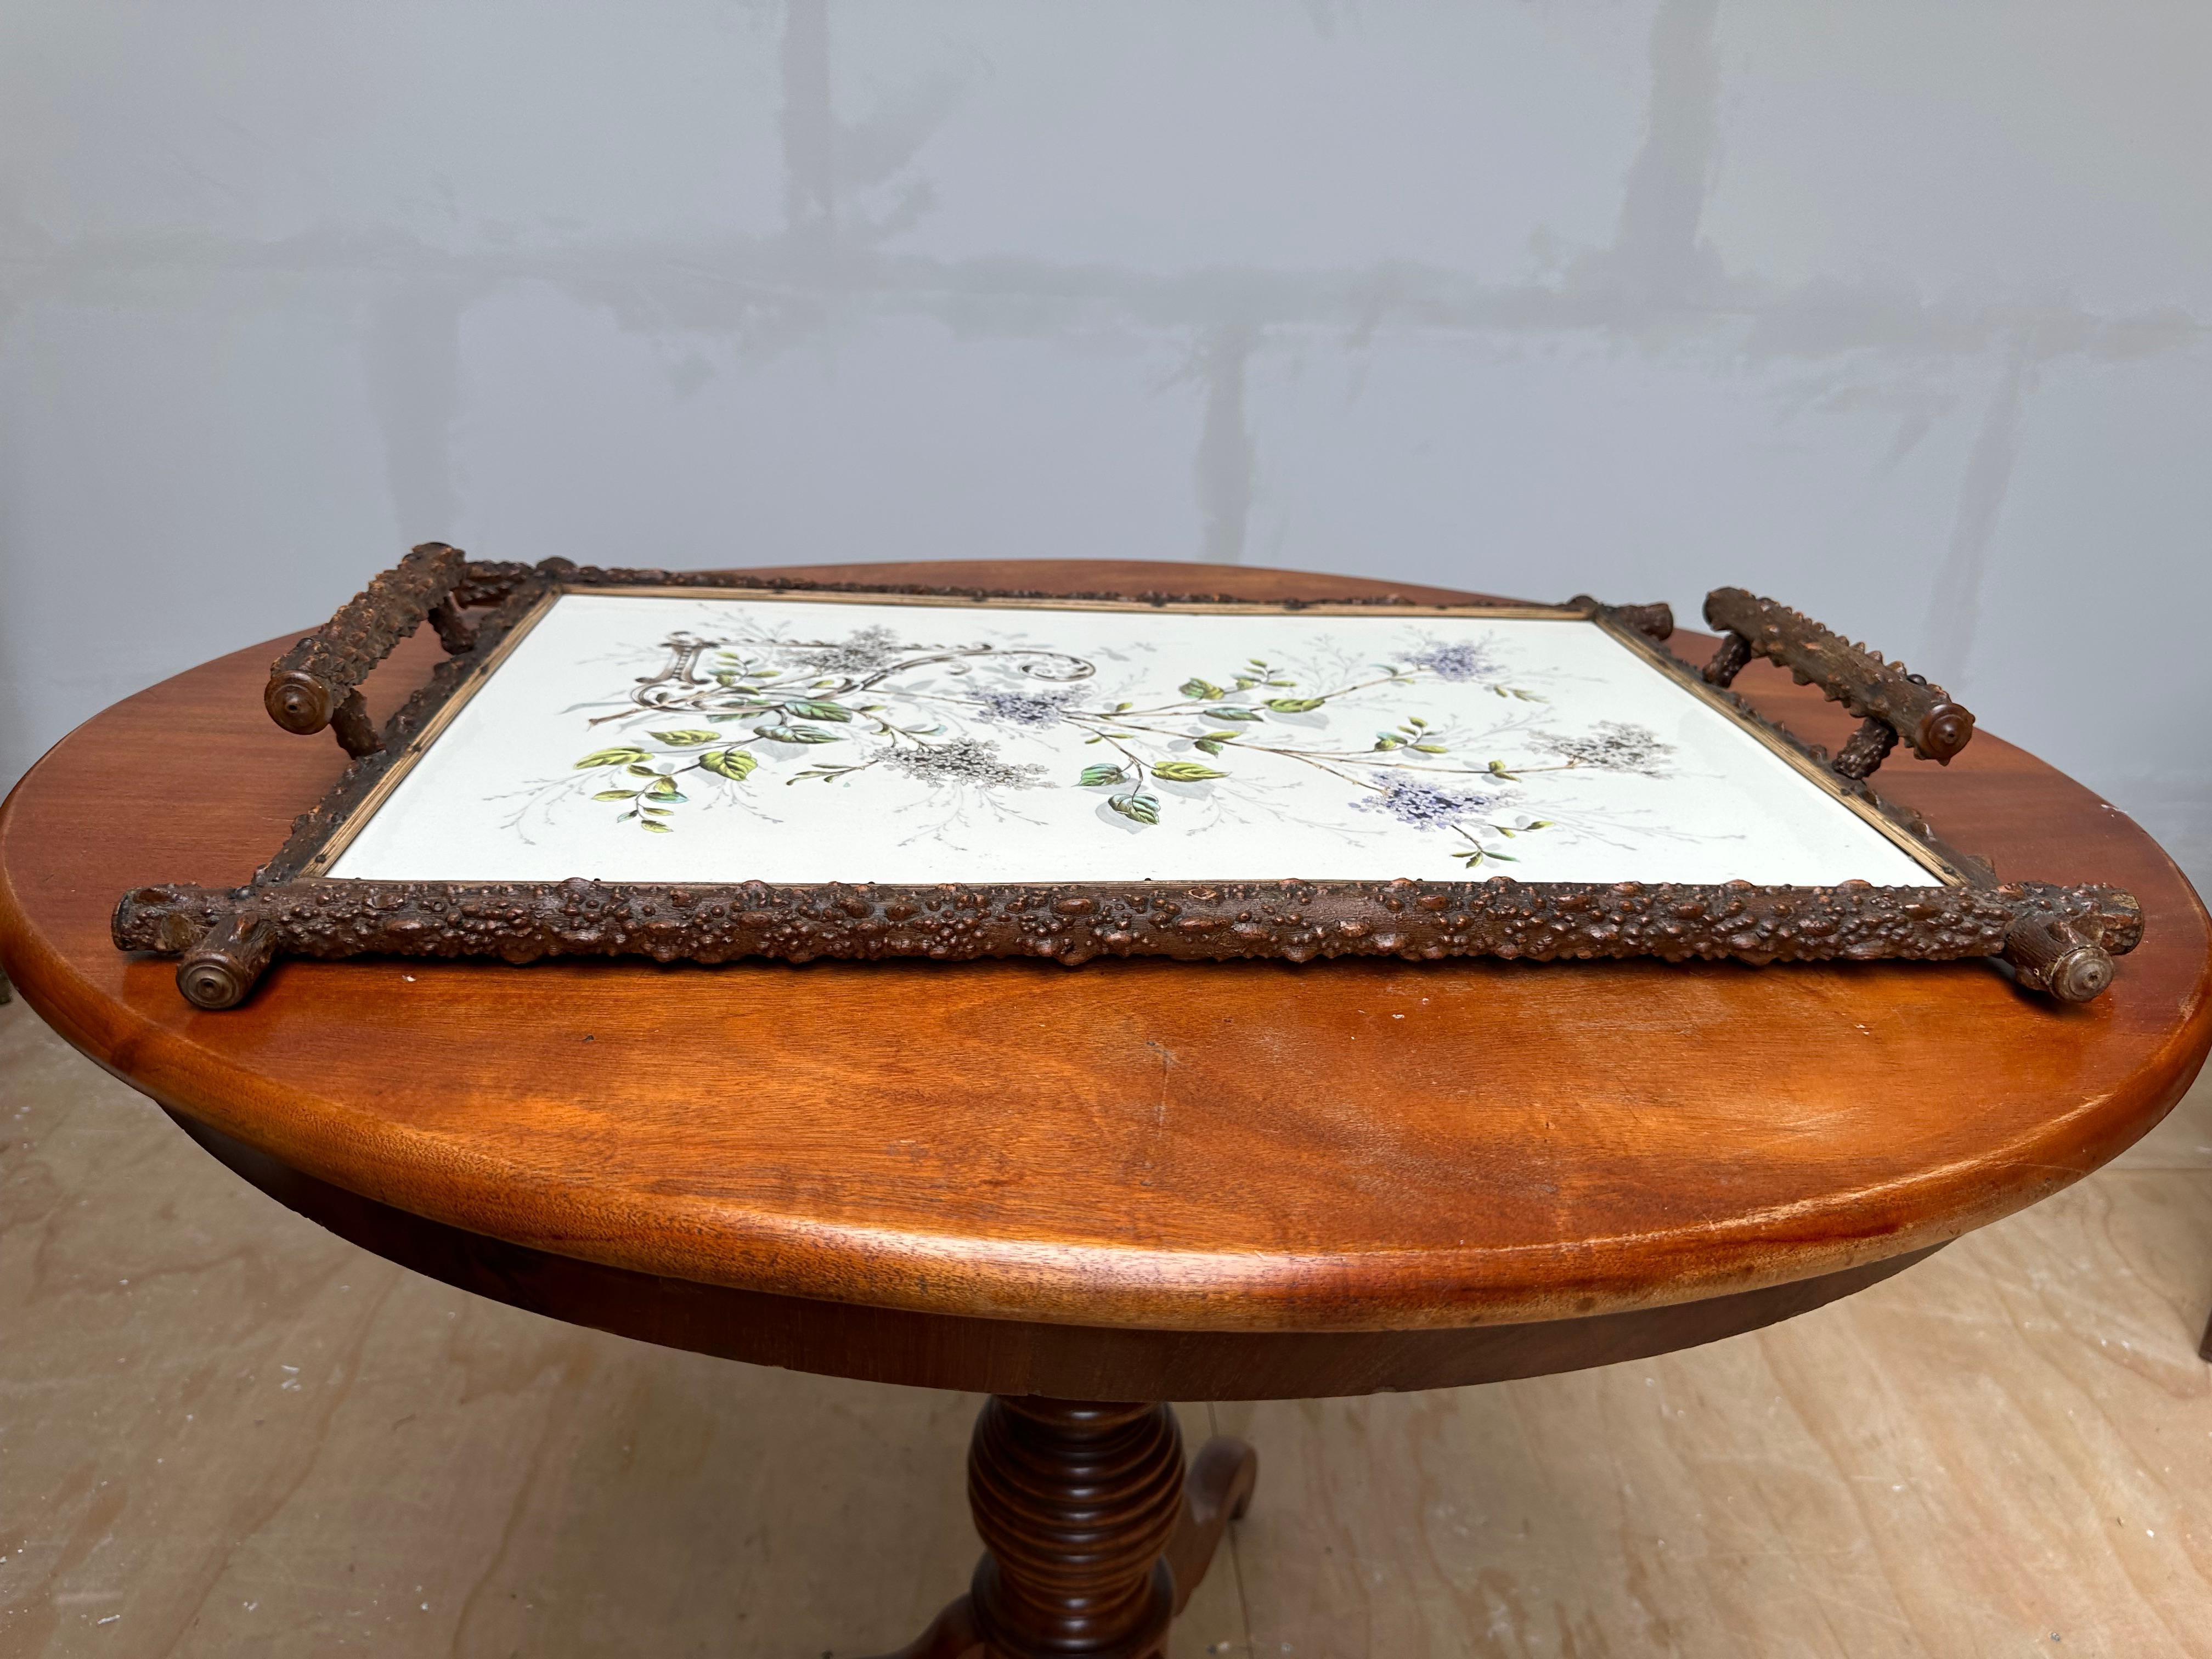 Jugendstil Antique & Extra Large Arts & Crafts Hand Painted Flower Decor, Tile Serving Tray For Sale